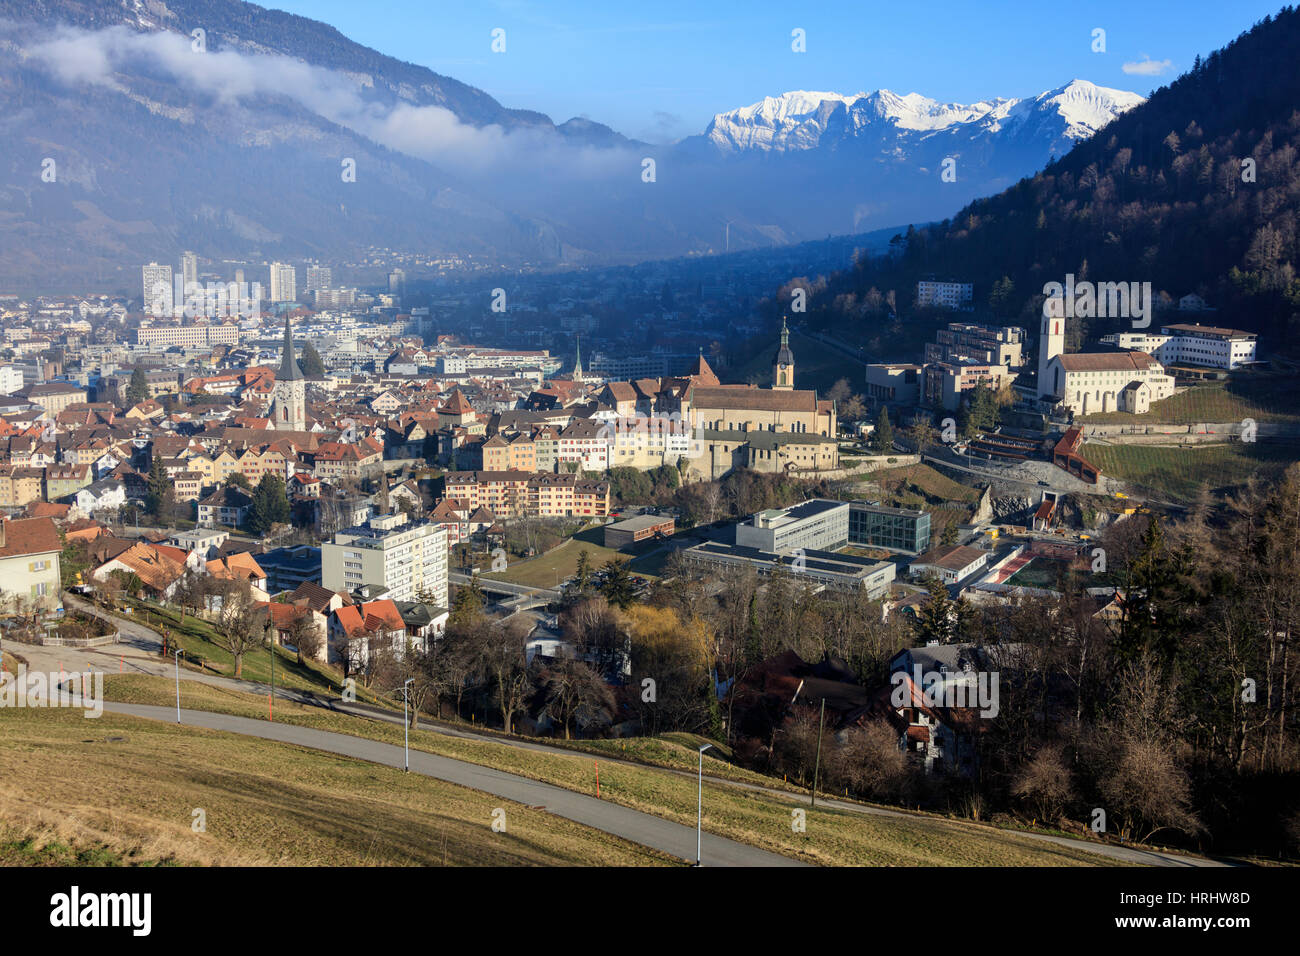 Vue de la ville de Chur entouré de bois et de sommets enneigés, district de Plessur, Canton des Grisons, Suisse, Suisse Banque D'Images